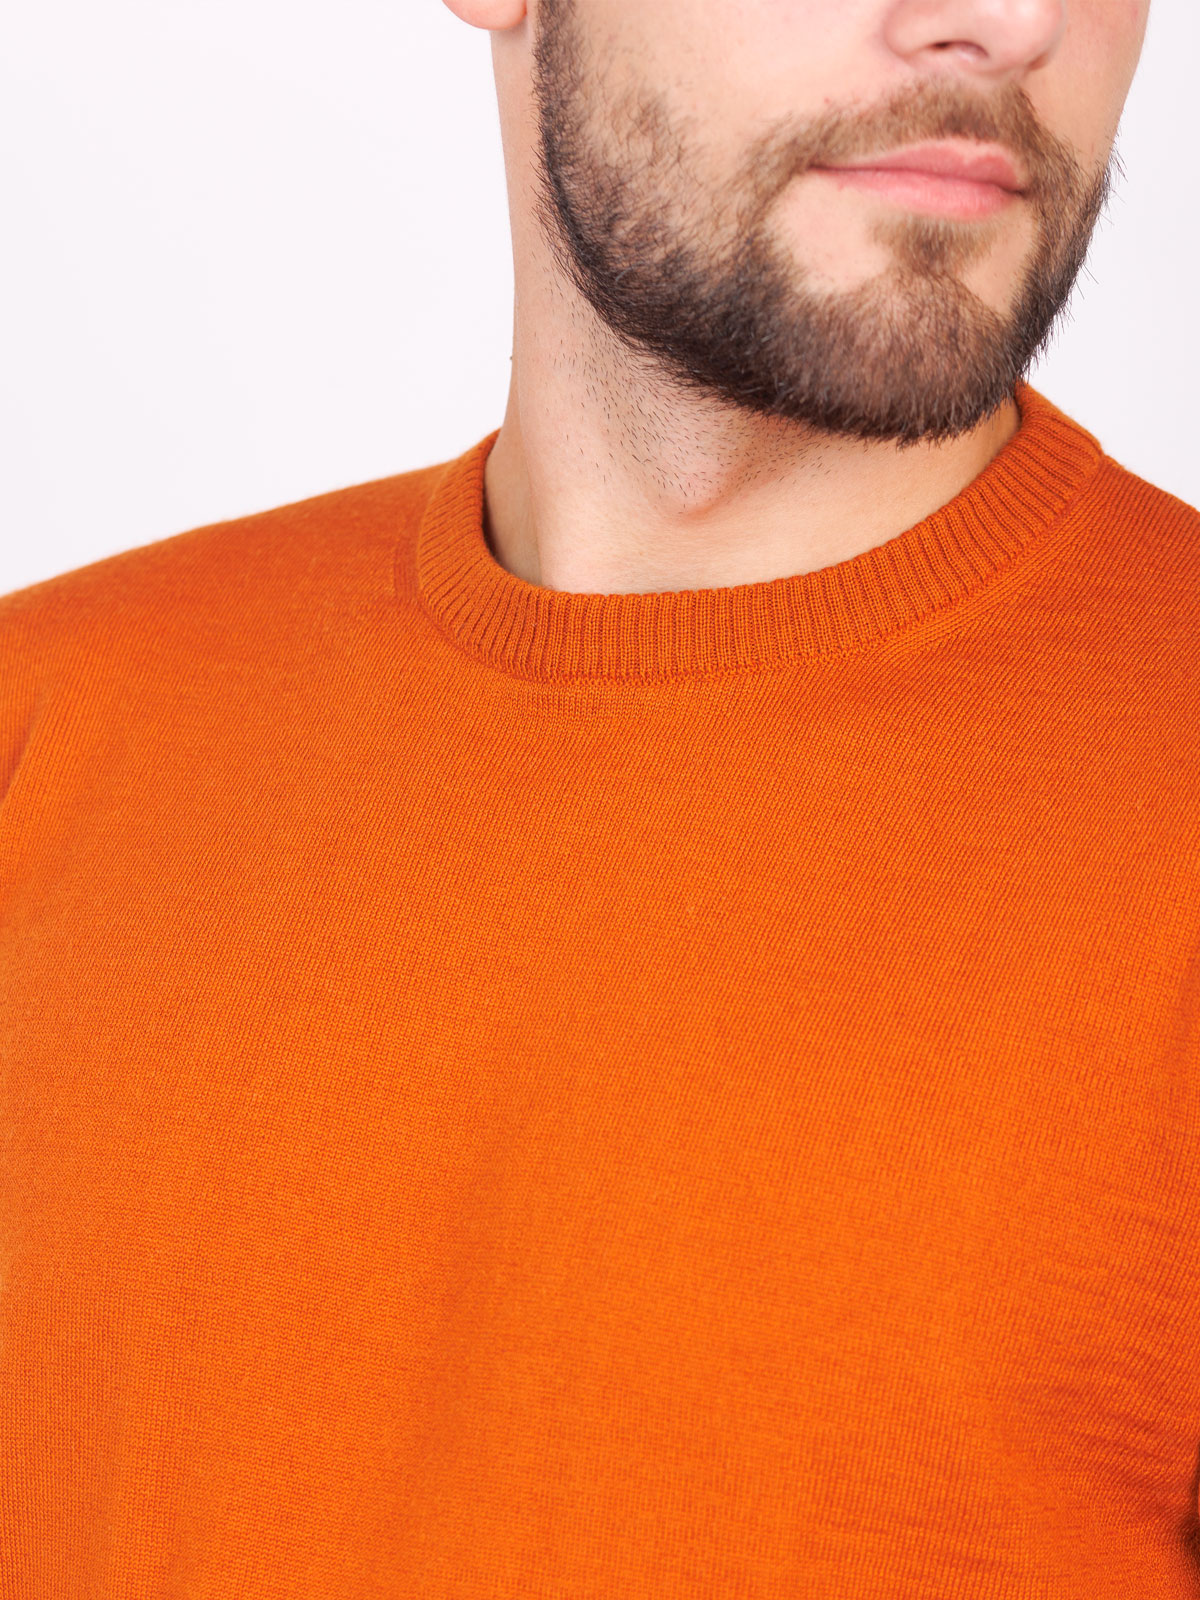 Μάλλινο πουλόβερ σε πορτοκαλί χρώμα - 33099 € 42.74 img3